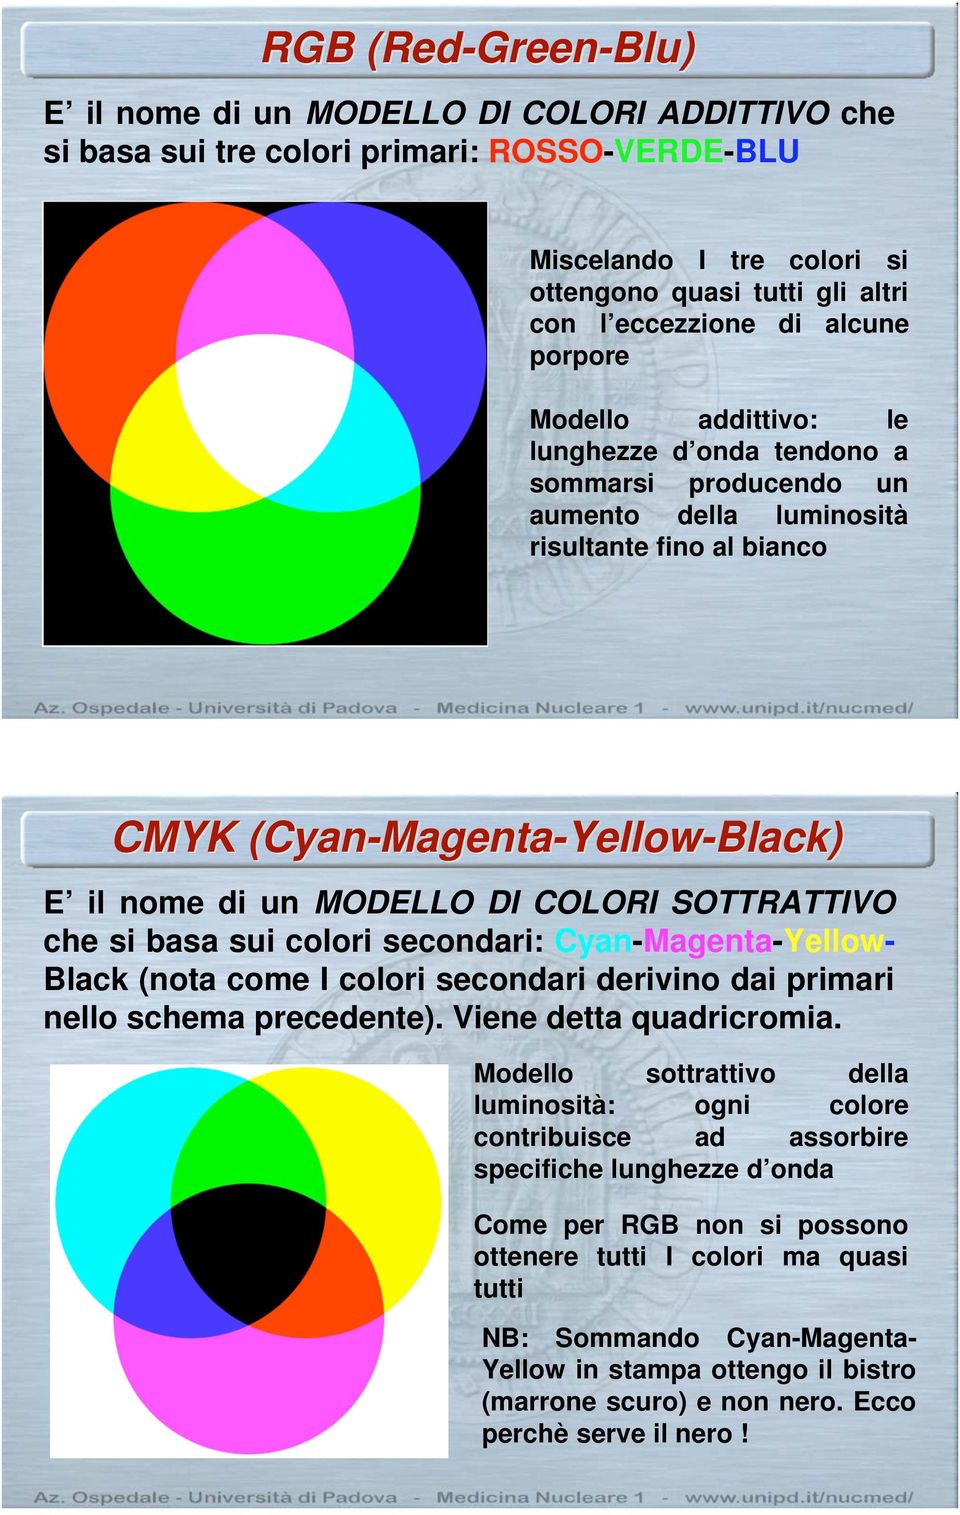 Cyan-Magenta-Yellow-Black) E il nome di un MODELLO DI COLORI SOTTRATTIVO che si basa sui colori secondari: Cyan-Magenta-Yellow- Black (nota come I colori secondari derivino dai primari nello schema